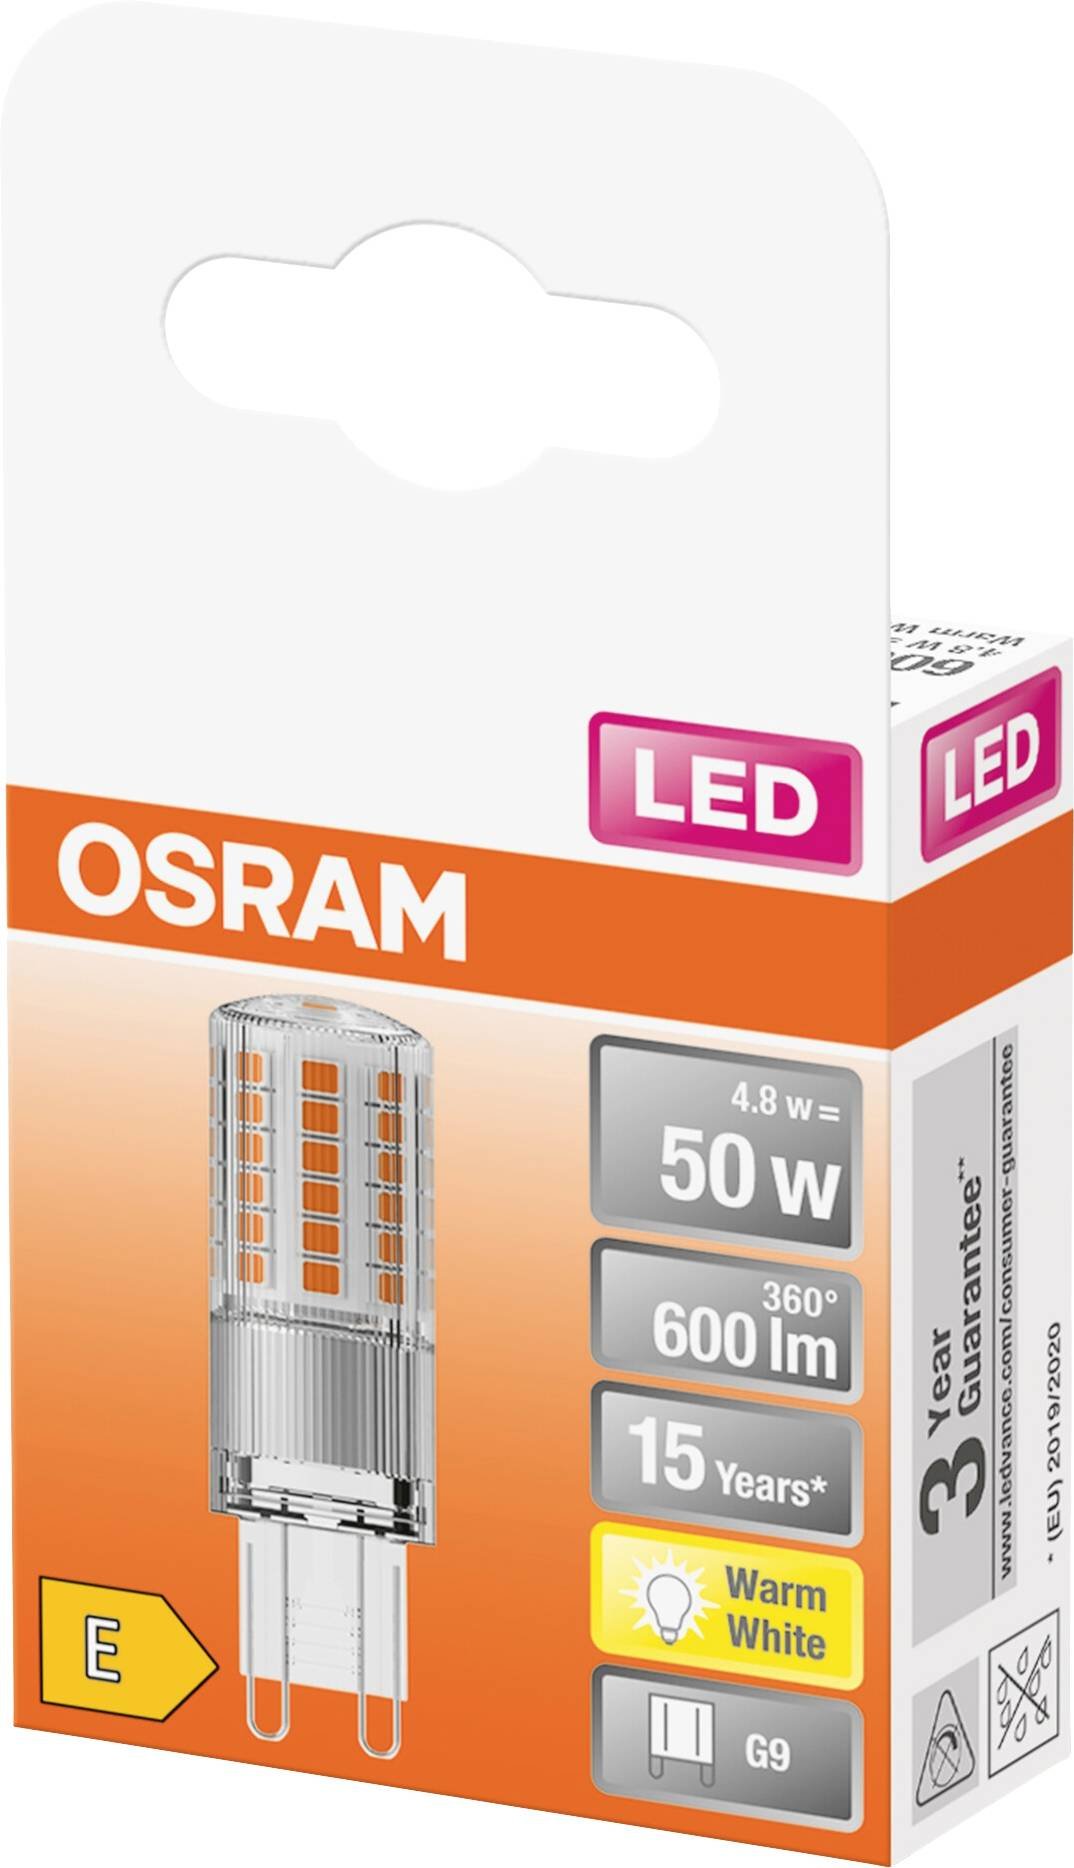 OSRAM LED kapsulinė lemputė PIN 50, G9, 4,8W, 2700 K, 600 lm, šiltai baltos sp. - 2